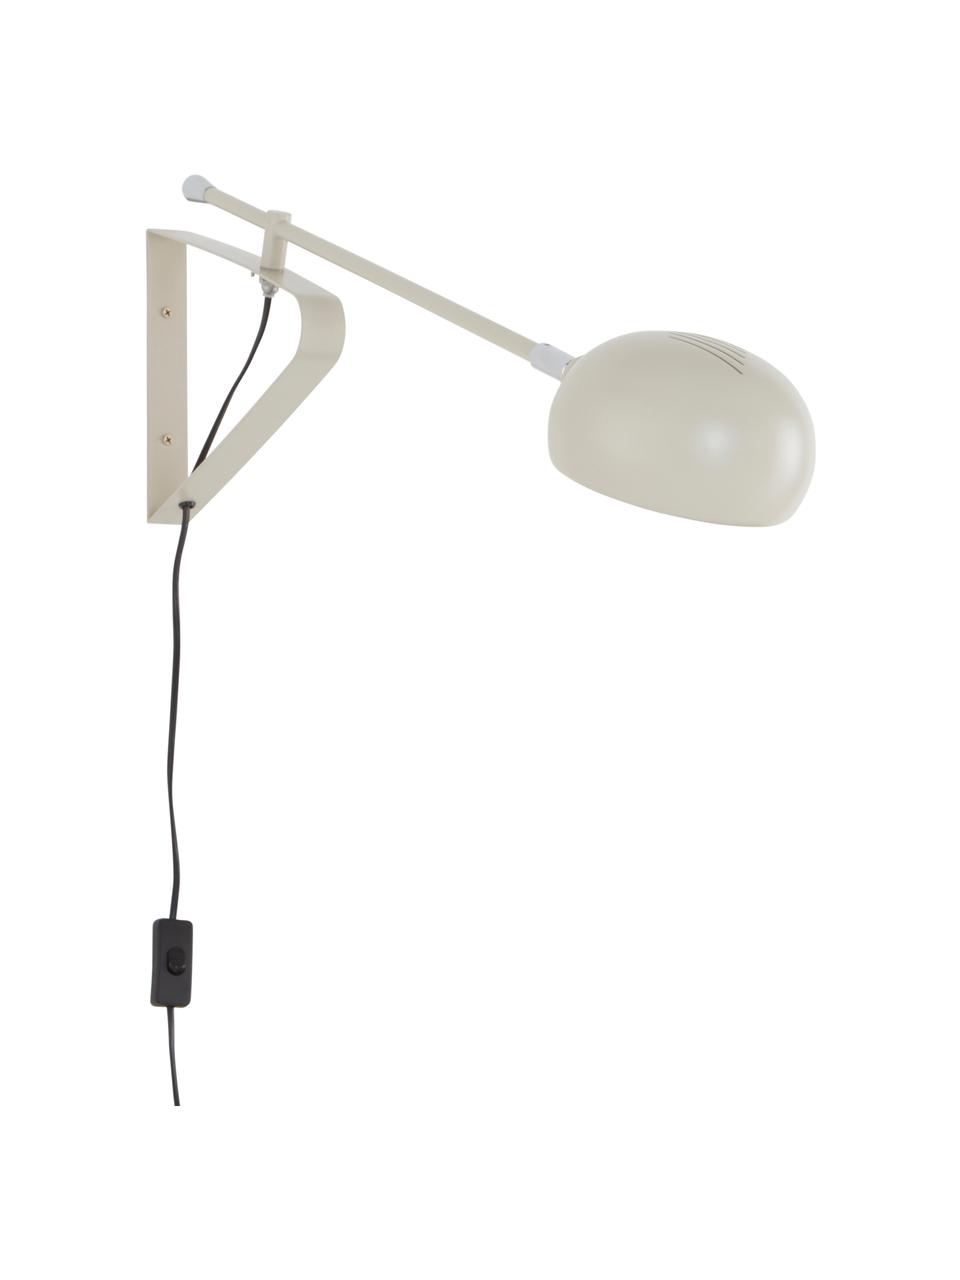 Grote verstelbare wandlamp Lincon met stekker, Lampenkap: gelakt metaal, Decoratie: verchroomd metaal, Beige, D 80 x H 21 cm